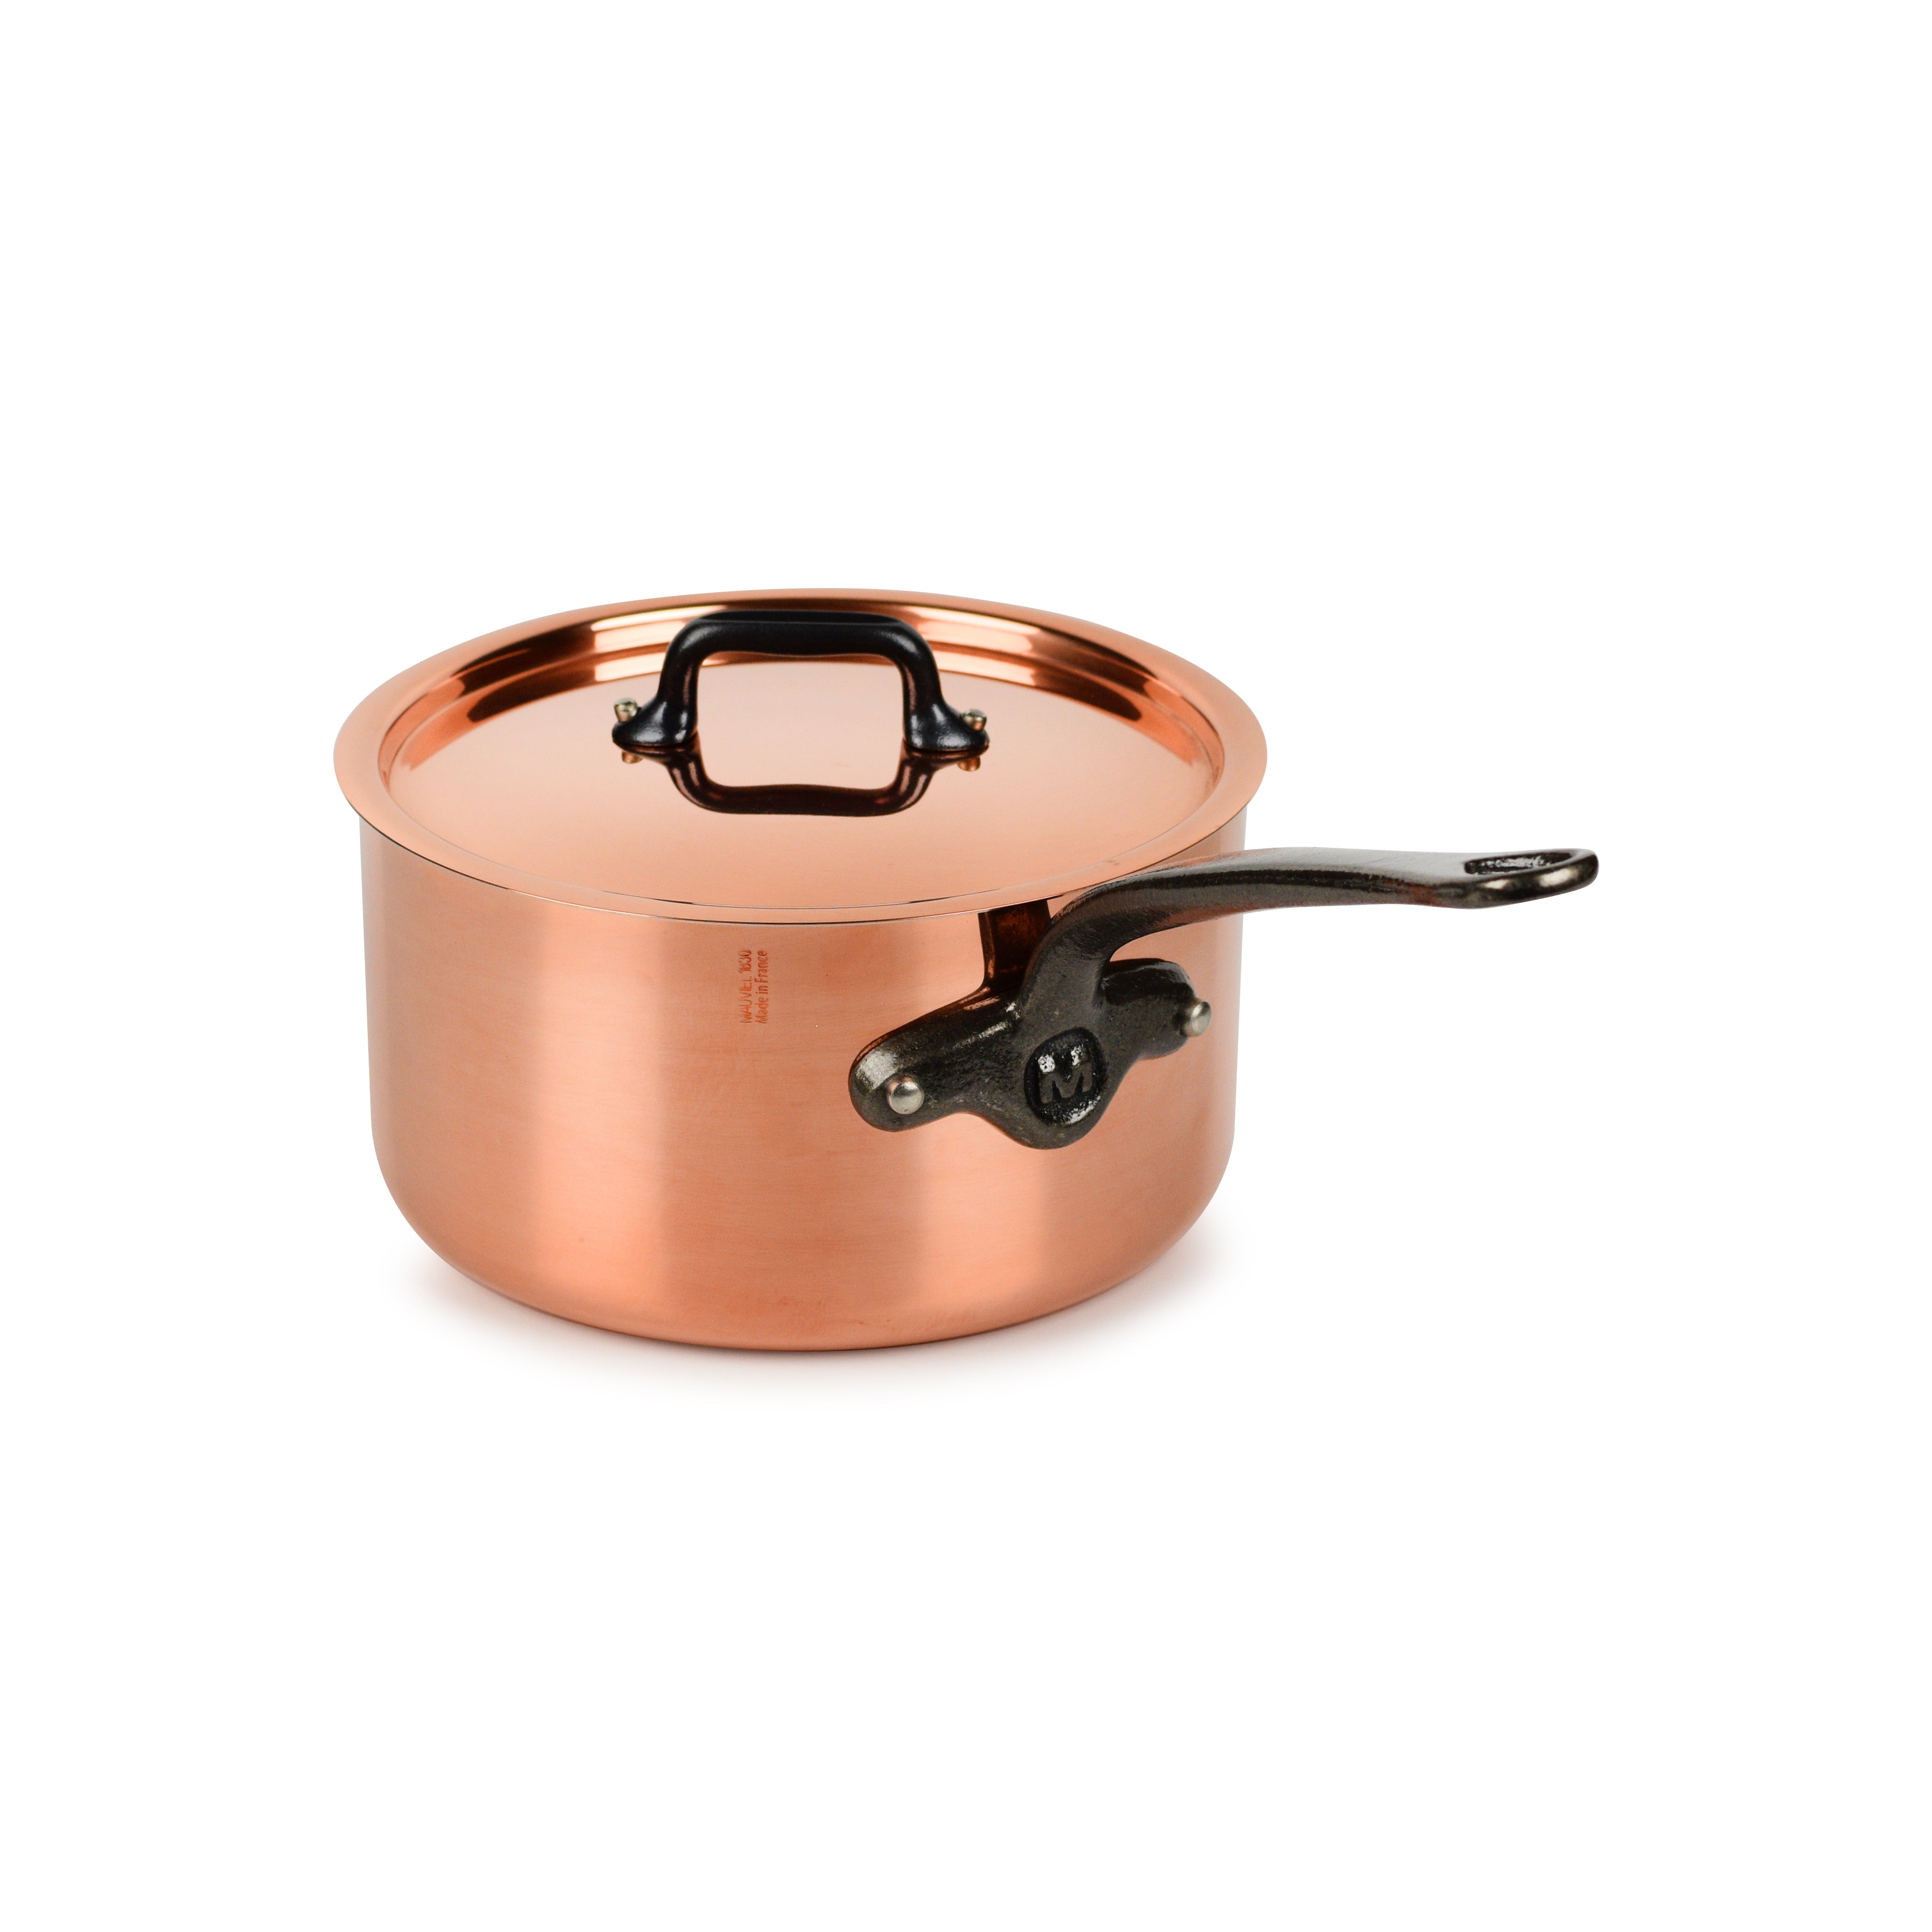 Mauviel M200ci 6-Quart Copper Saute Pan